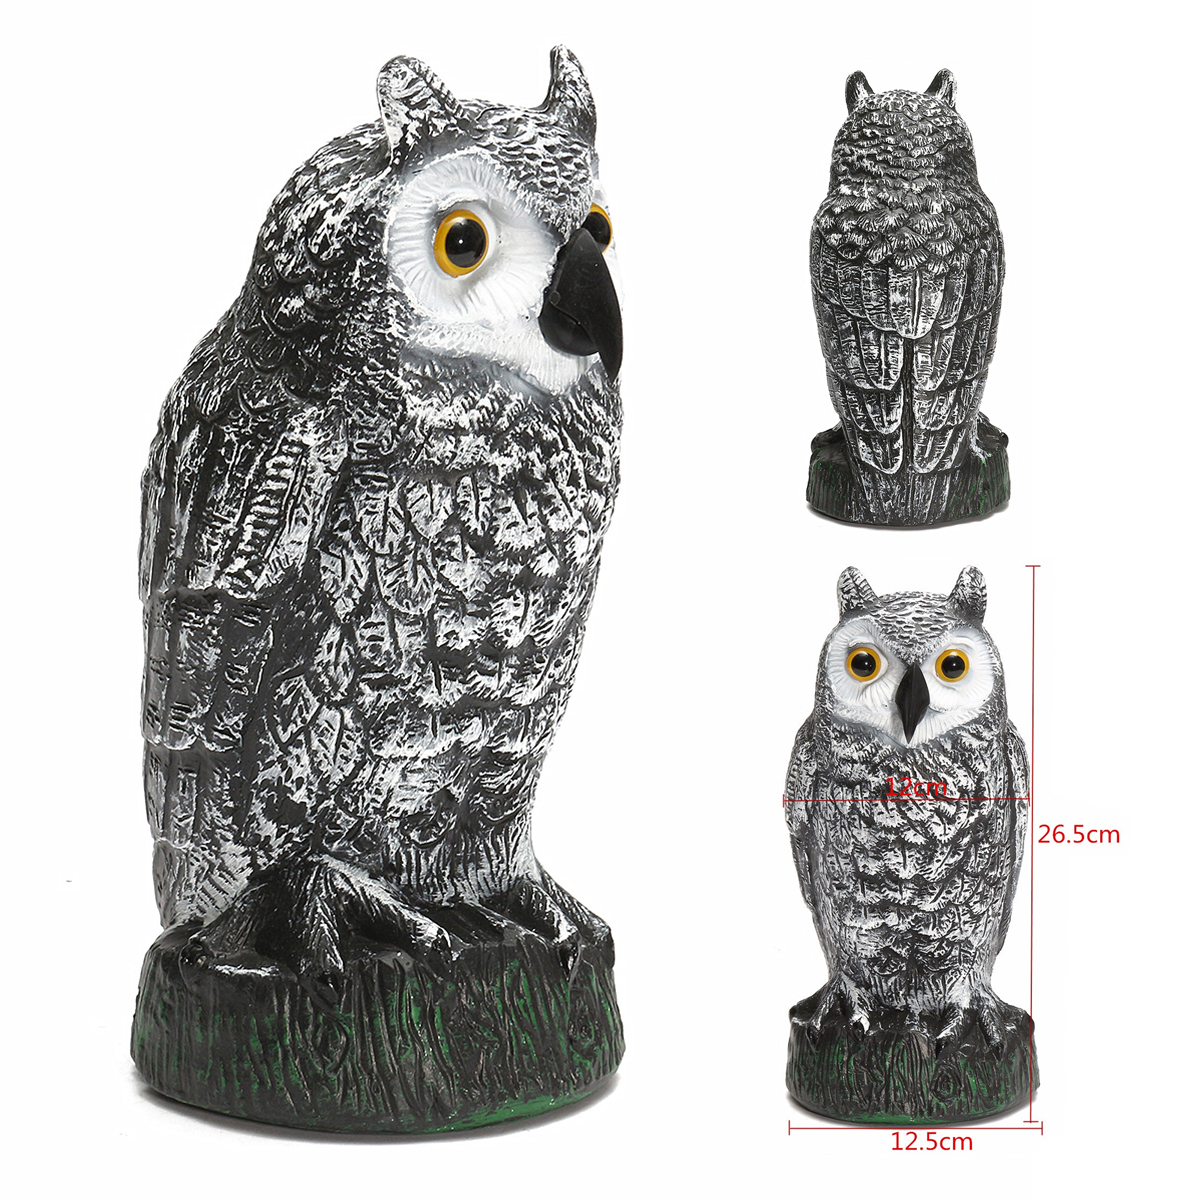 Plastic-Standing-Fake-Owl-Hunting-Decoy-Deterrent-Scarer-Repeller-Garden-Decor-1243366-1